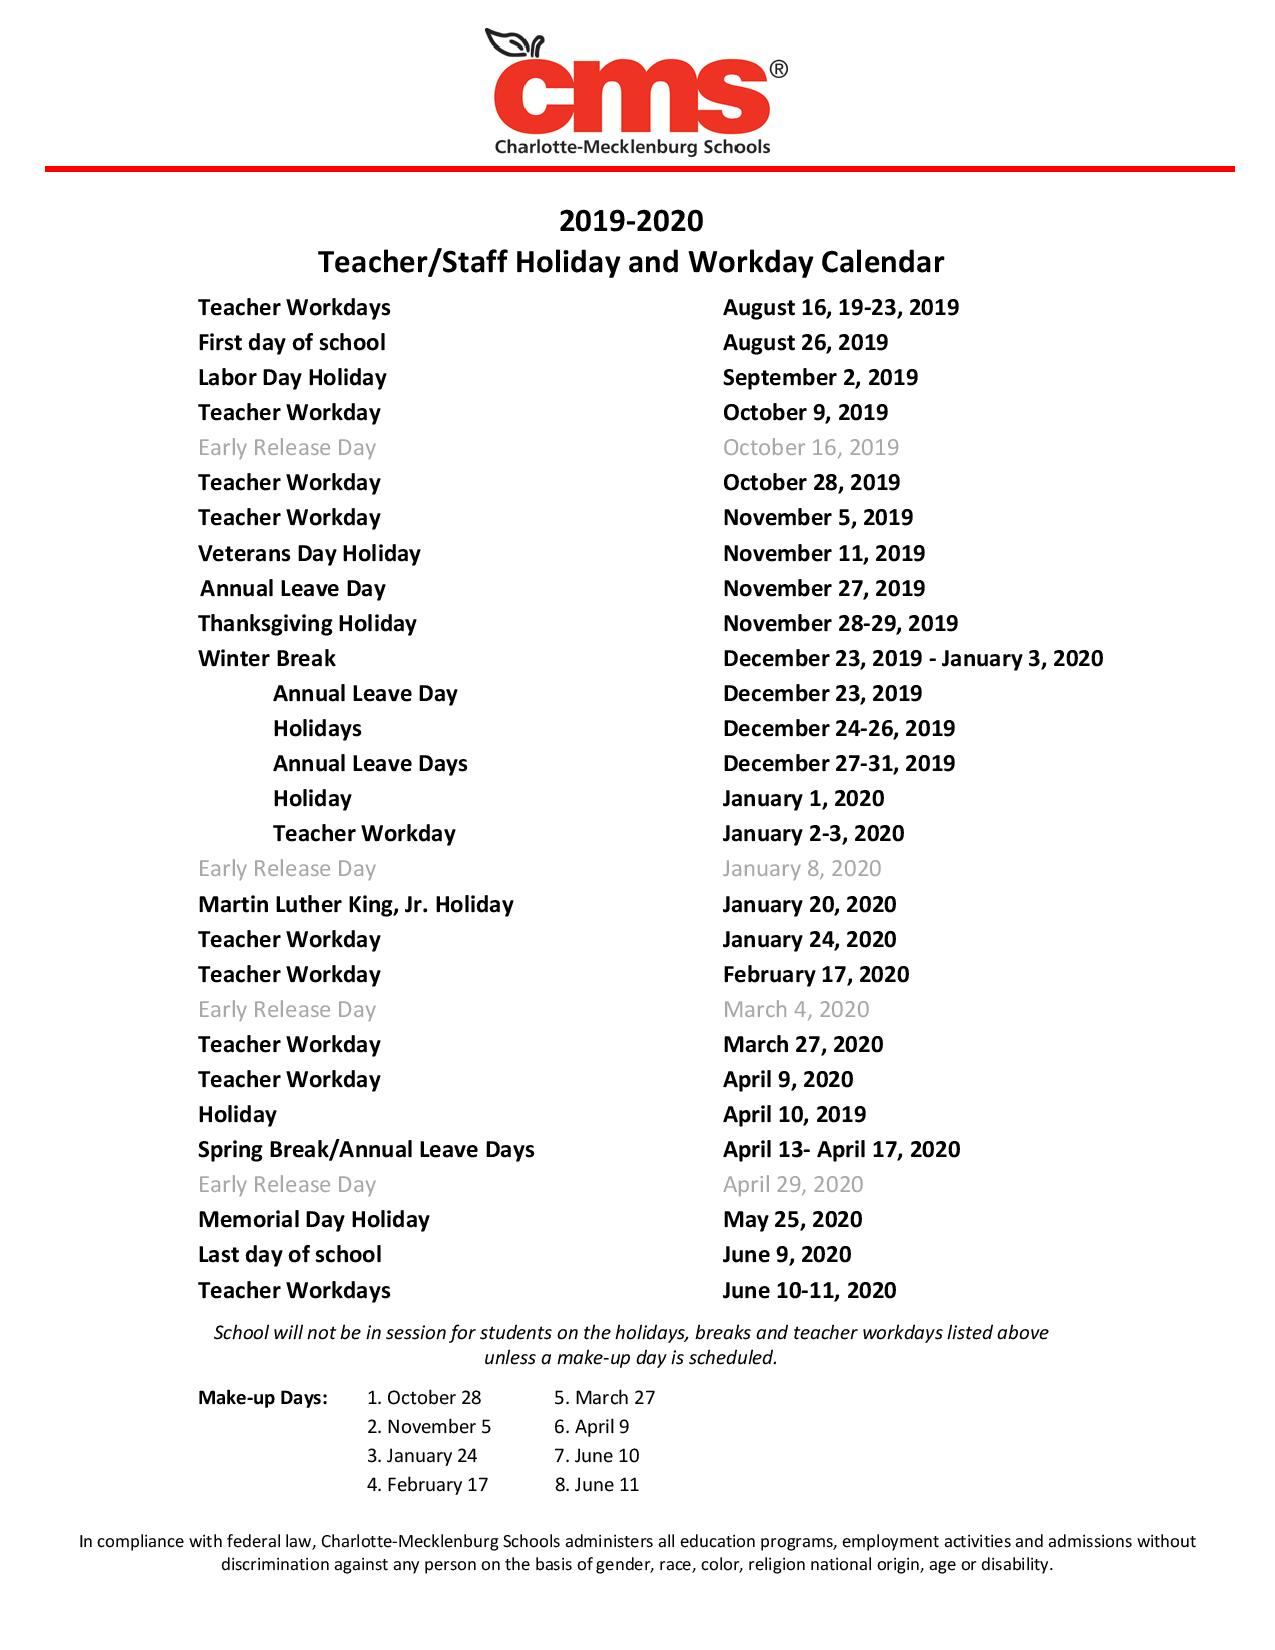 canon mac school calendar for 2018-2019